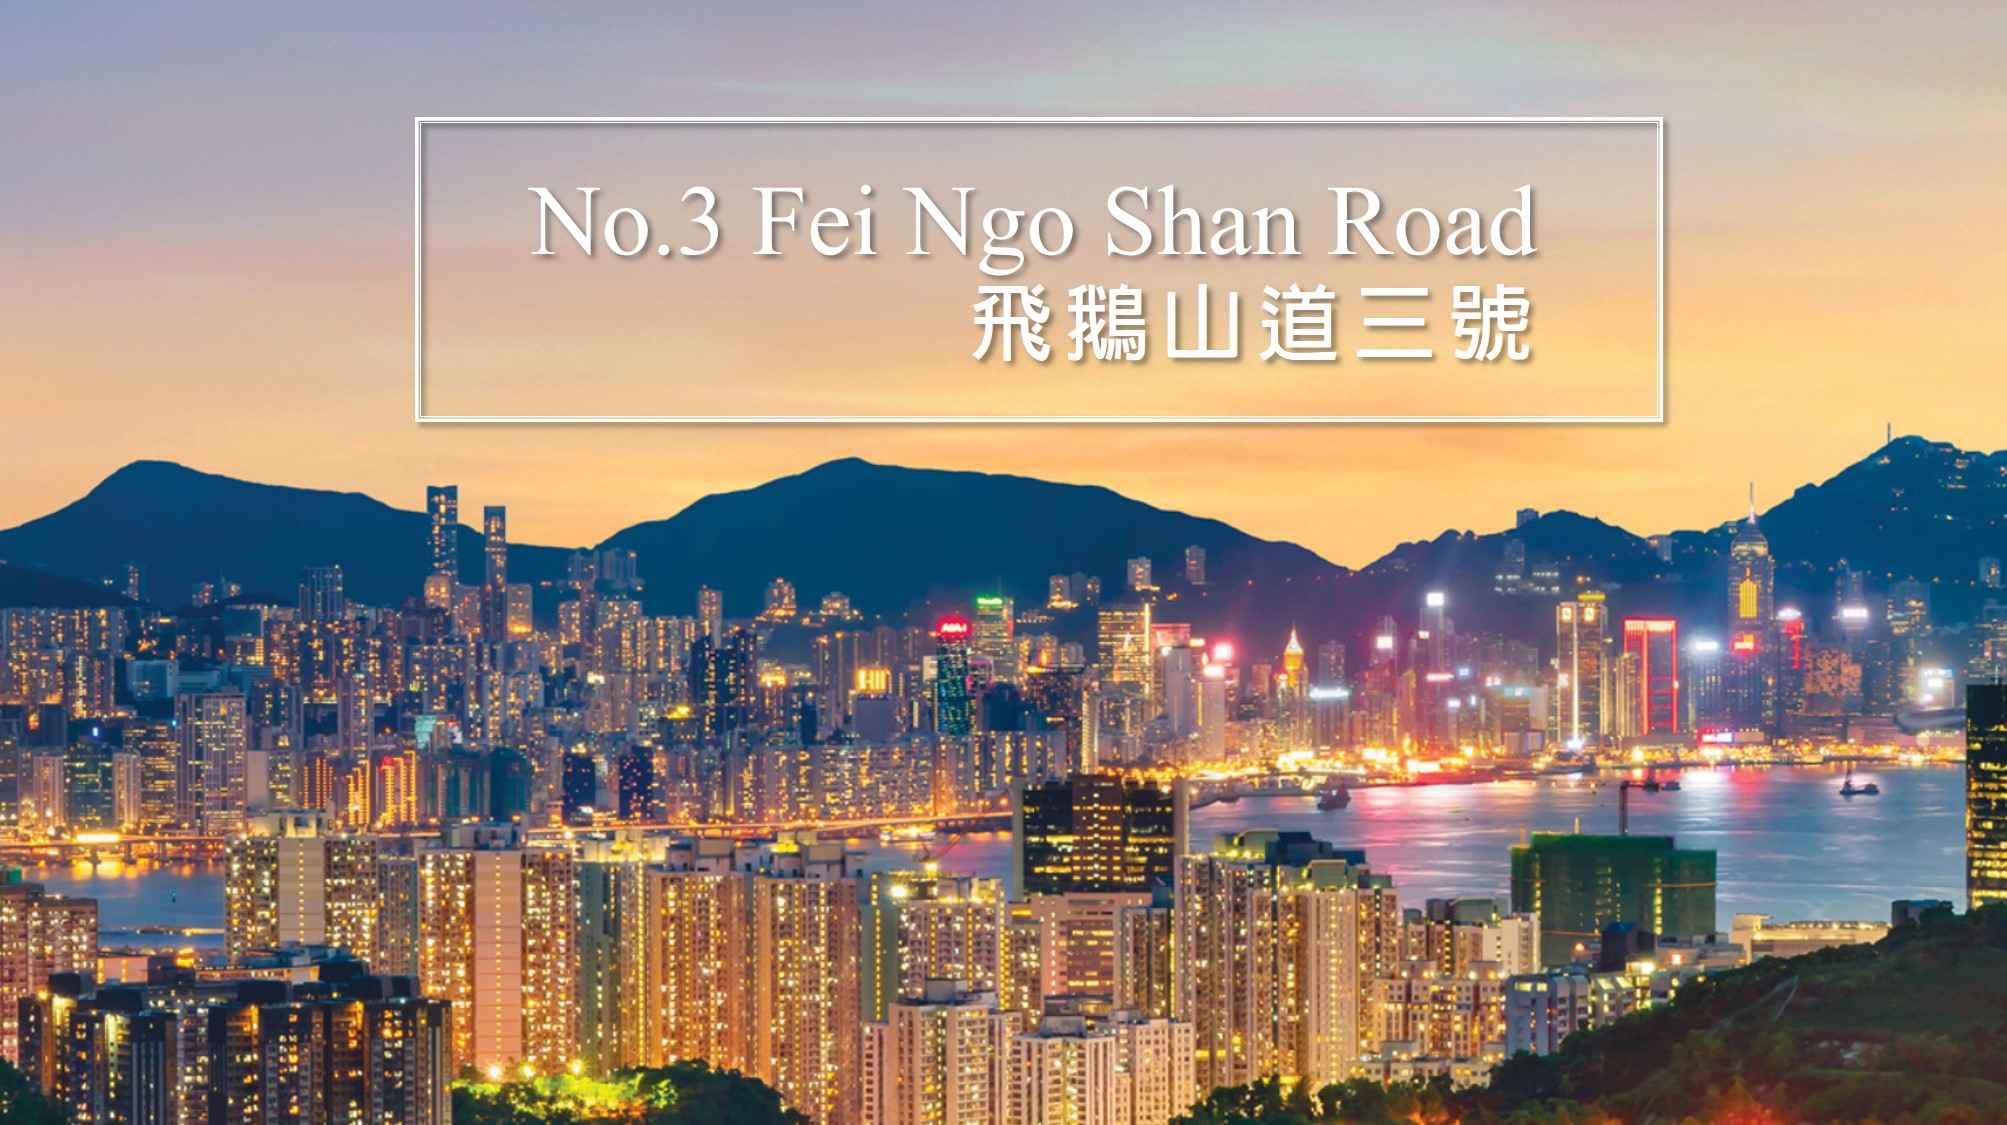 飛鵝山道三號 No 3 Fei Ngo Shan Road